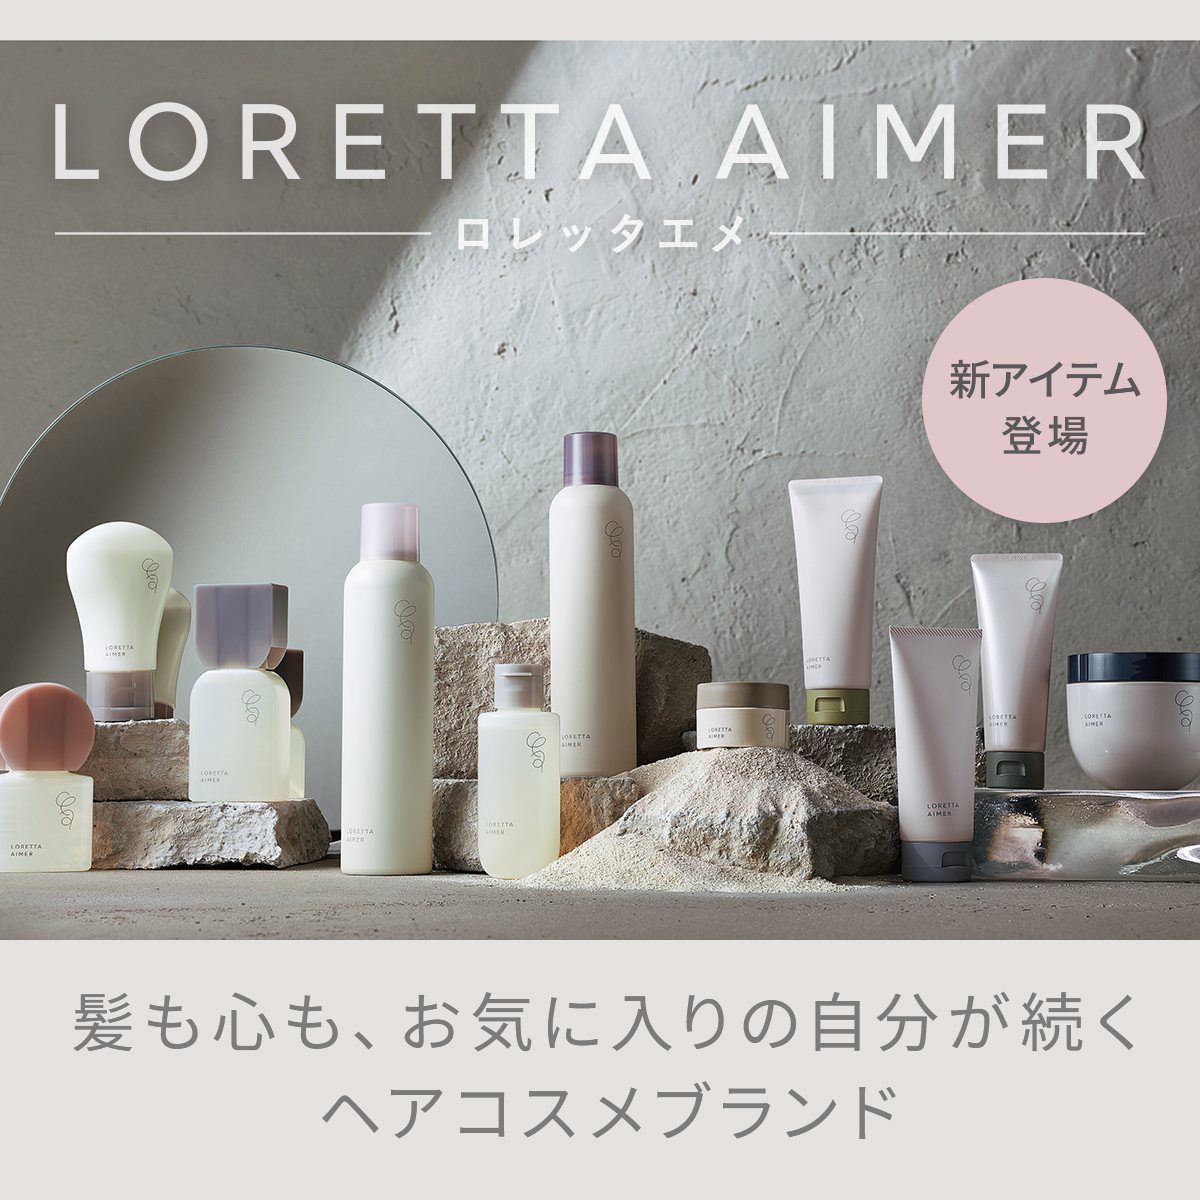 「LORETTA AIMER（ロレッタエメ）」のバナー広告